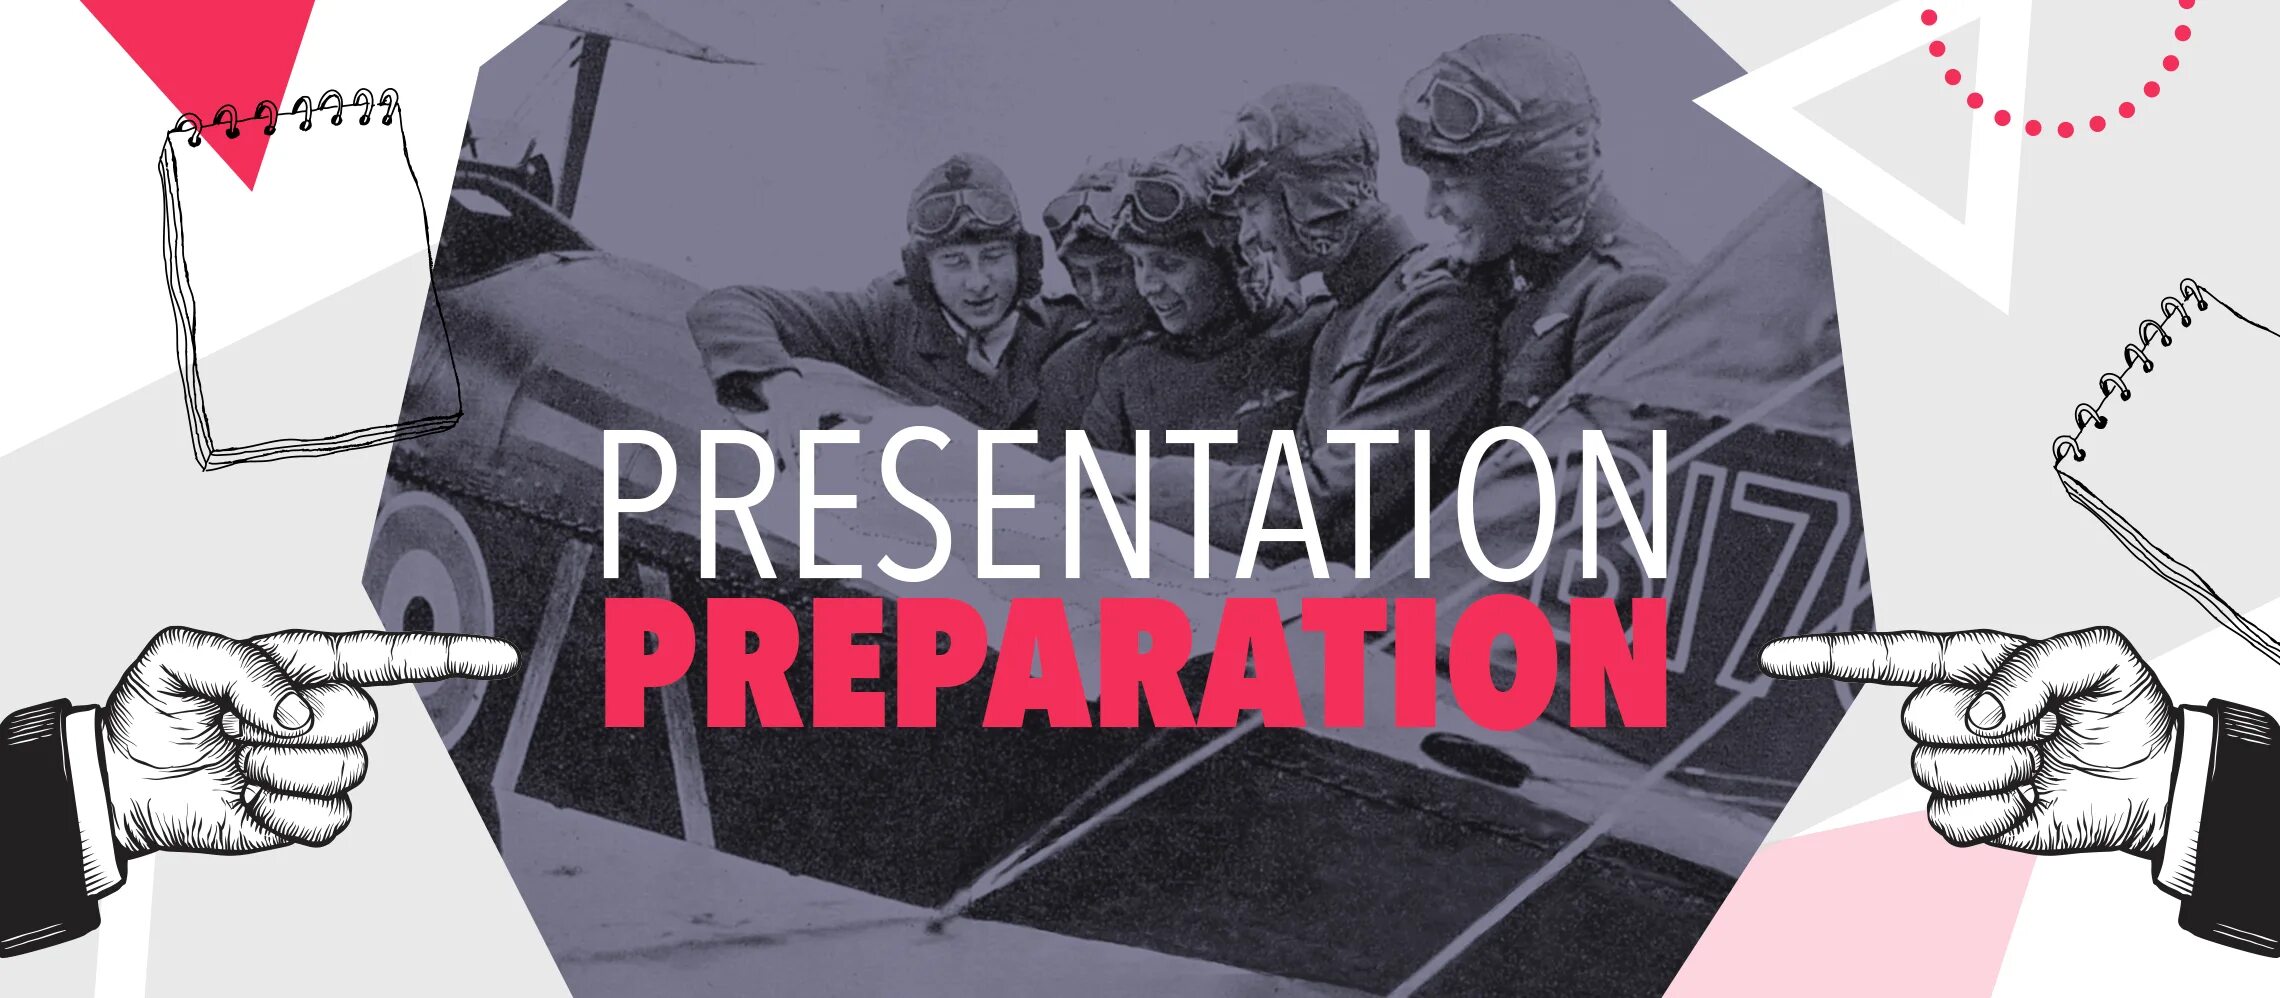 Prepare presentations. Prepare for. Preparation. Prepare